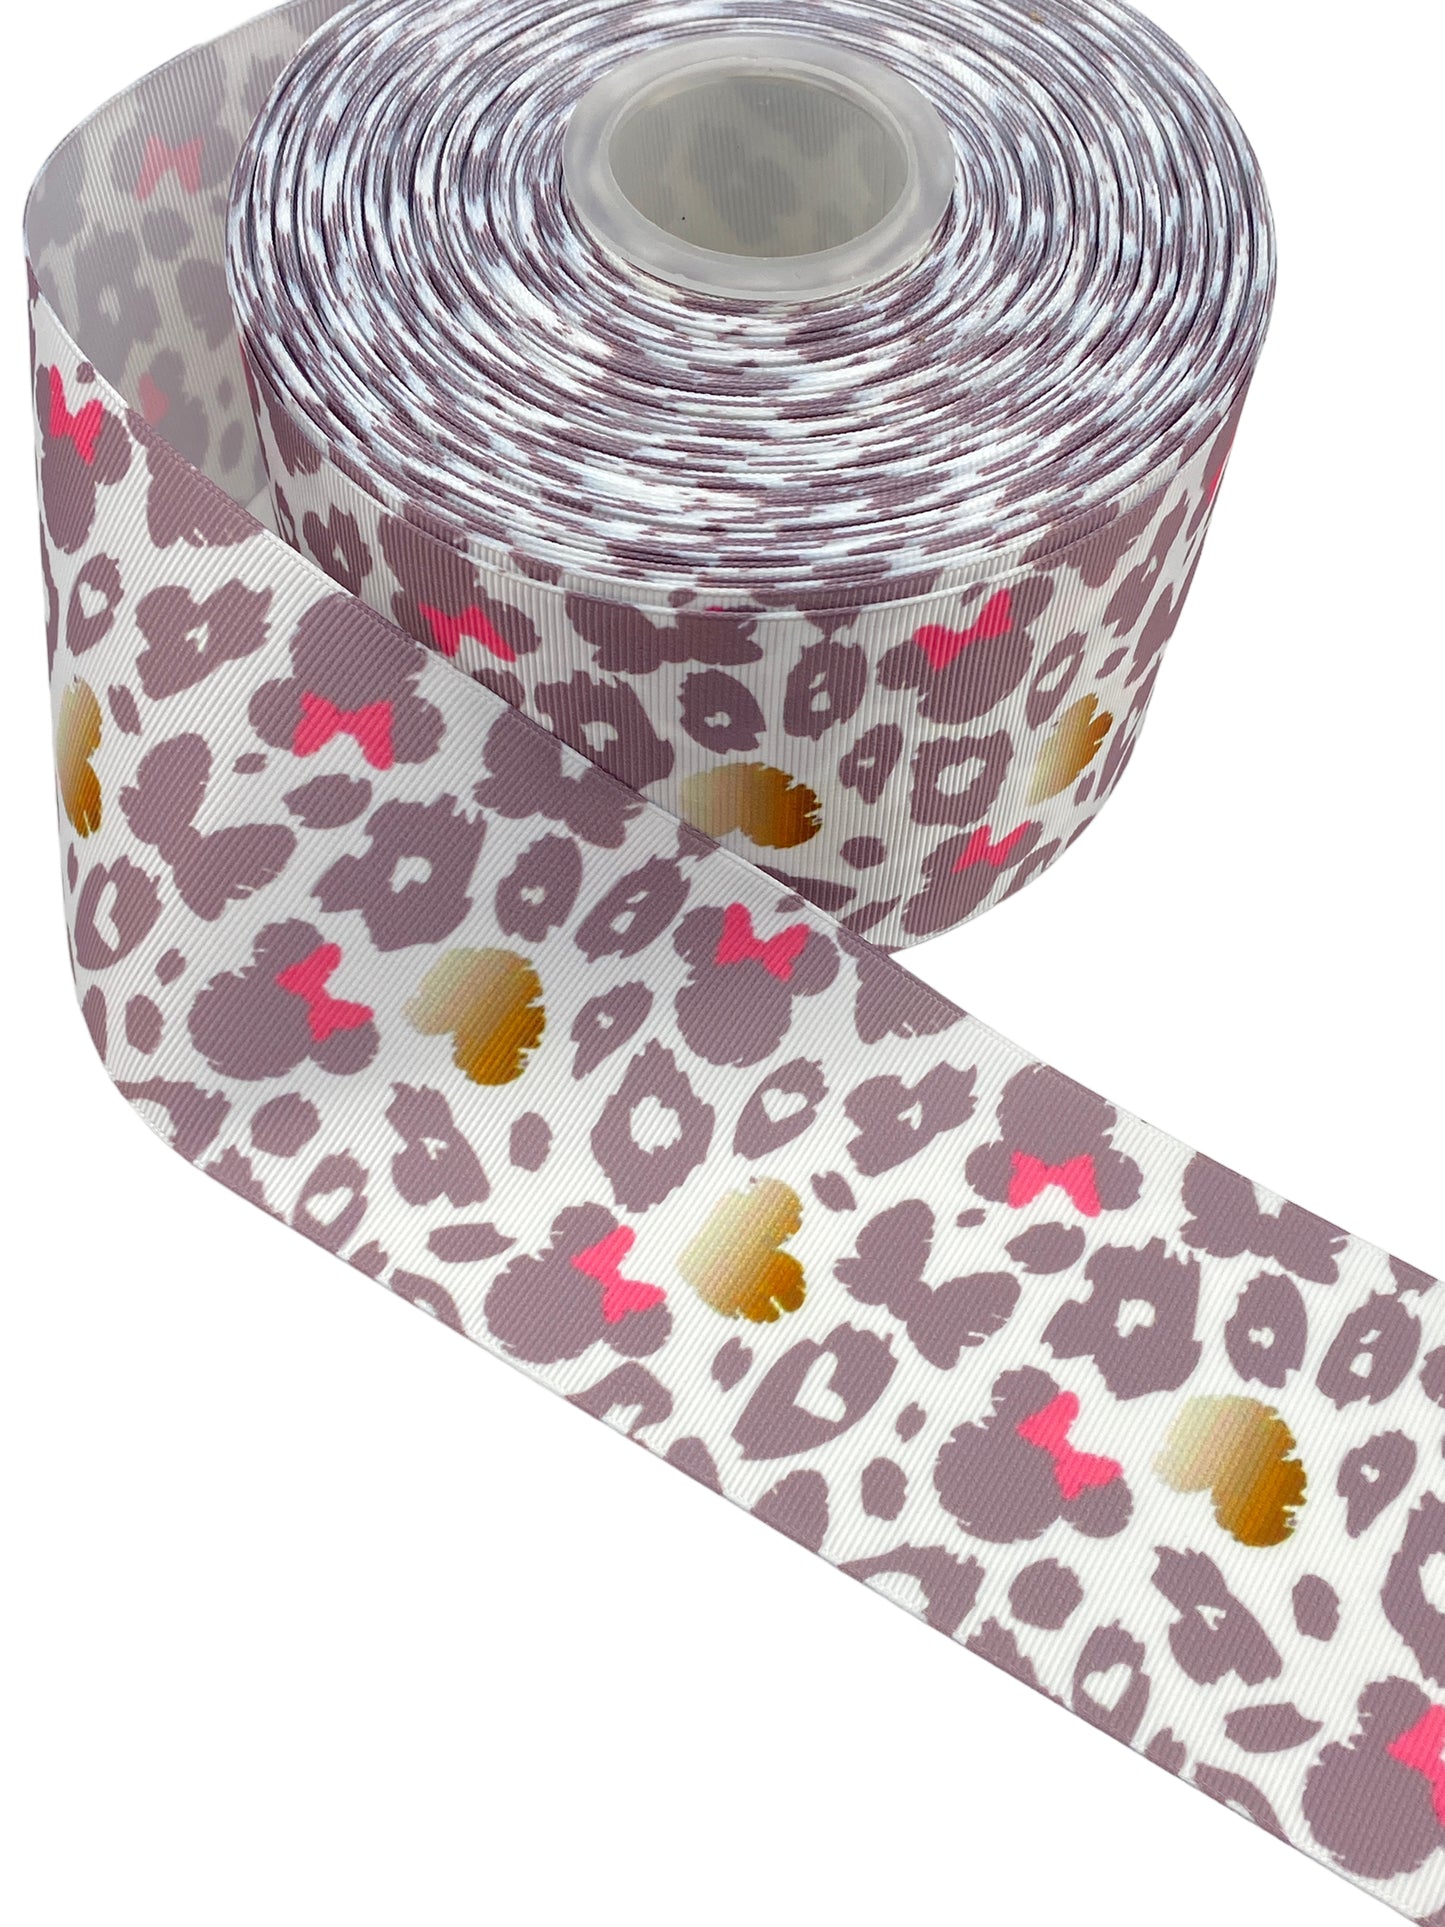 Minnie Mouse Leopard print Ribbon. 1 yard,  (75mm/3inch Ribbon)